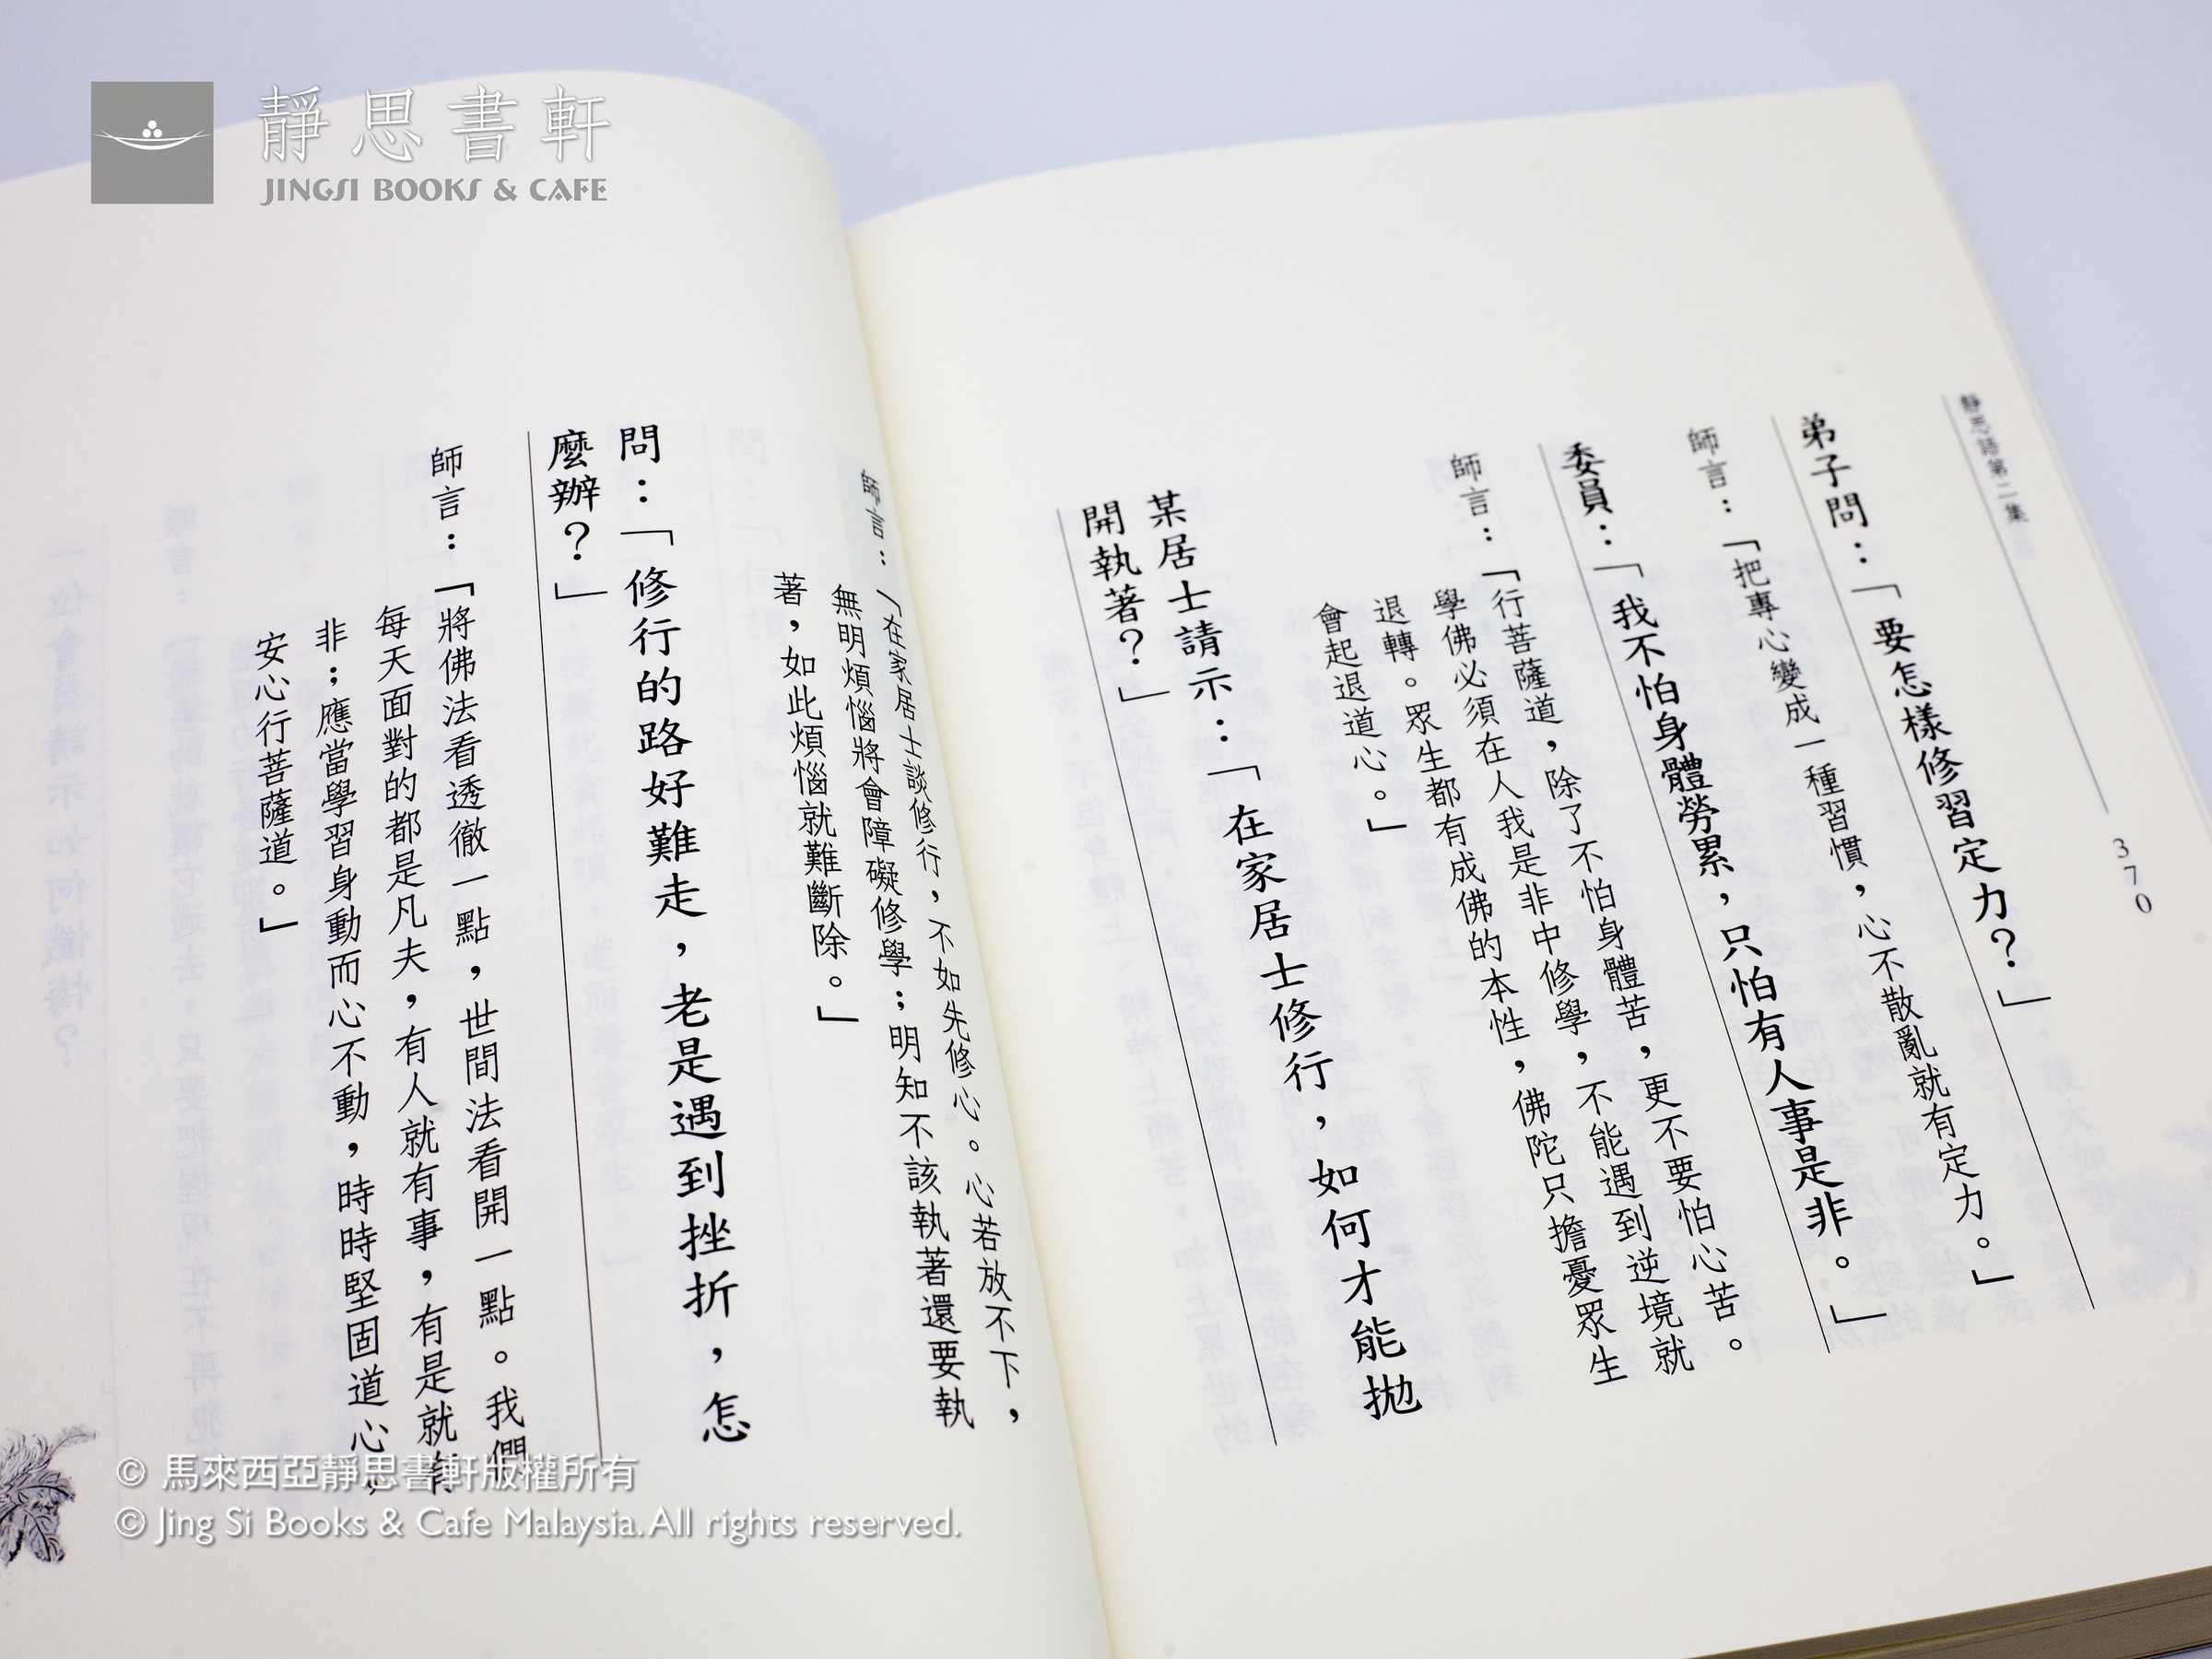 靜思書籍】靜思語第二集/ Jing Si Aphorisms Ep 2 – Jing Si Books & Cafe